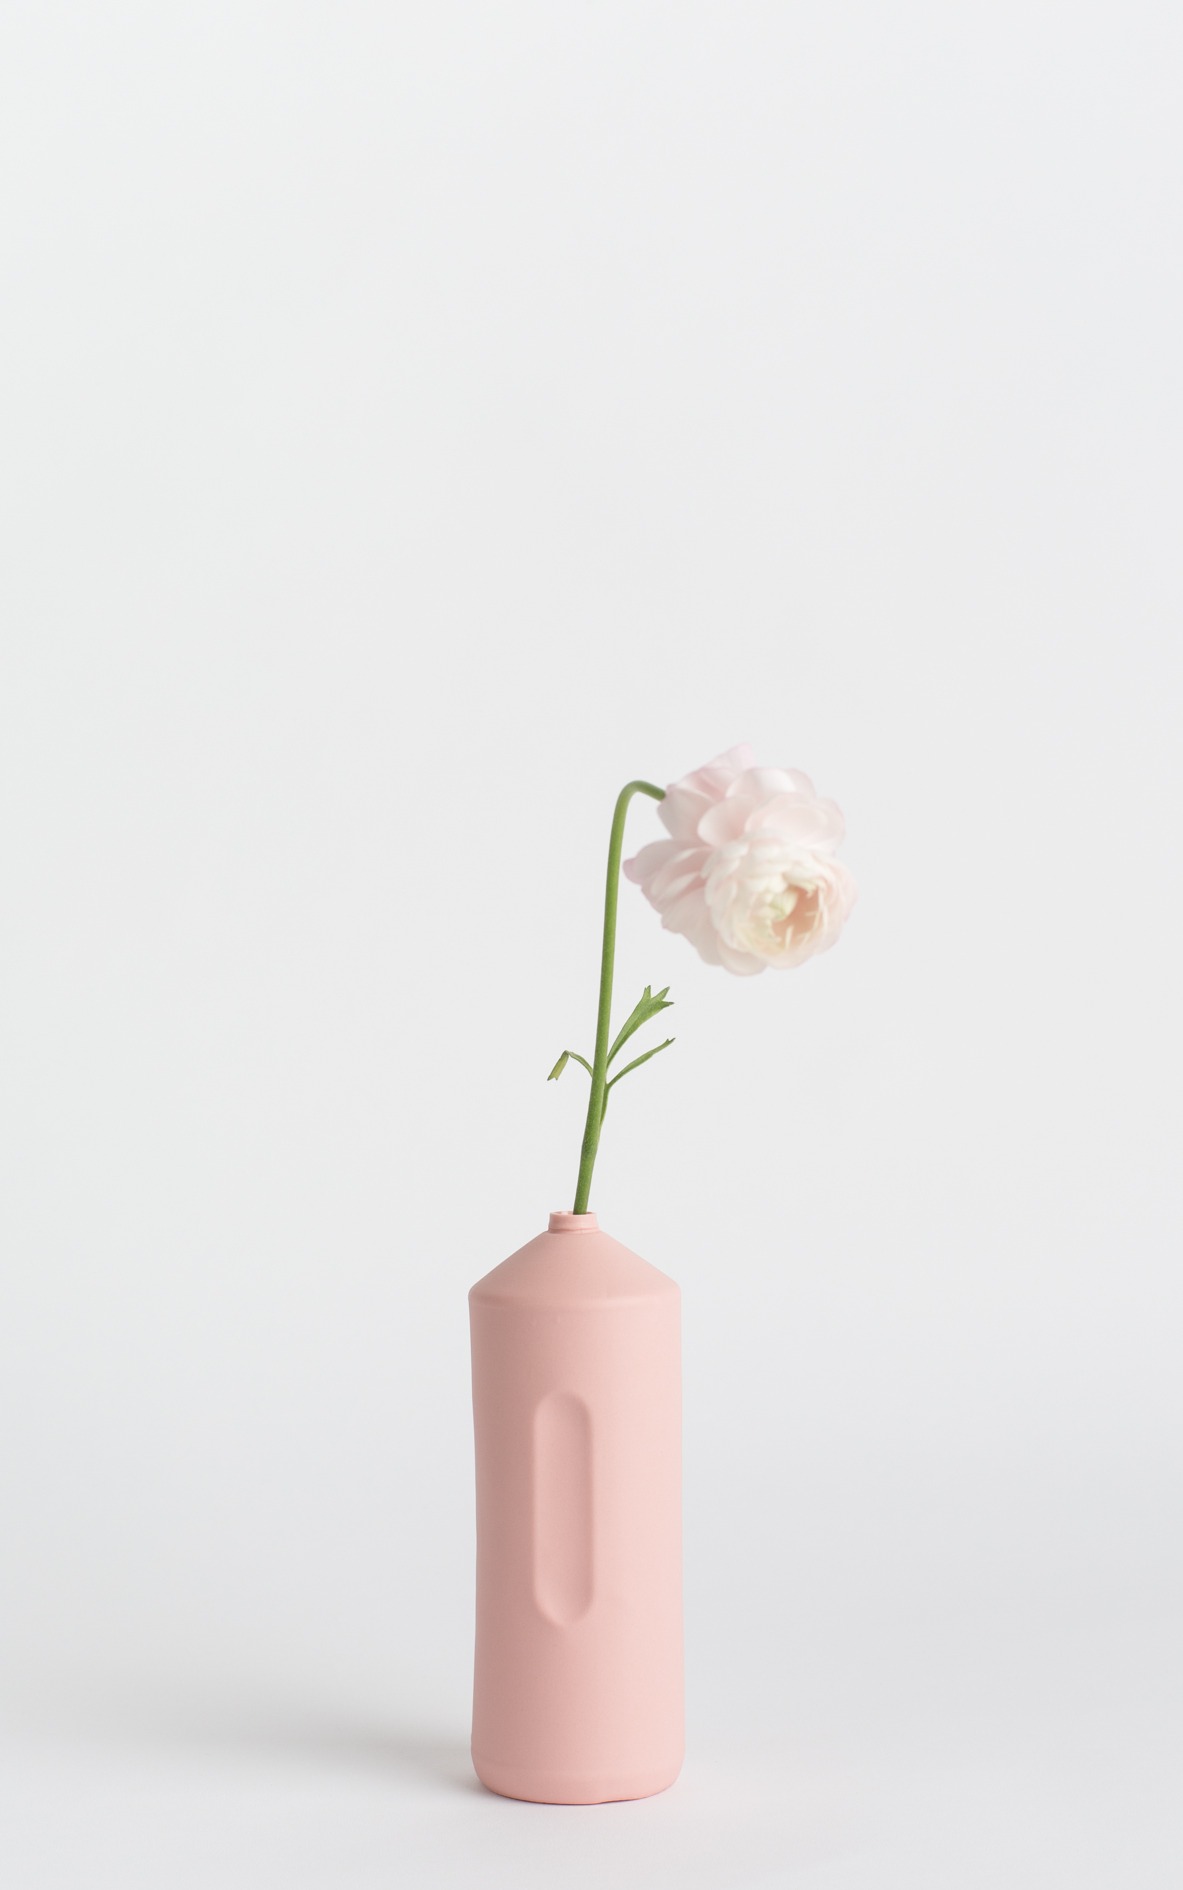 bottle vase #2 rose pink with flower